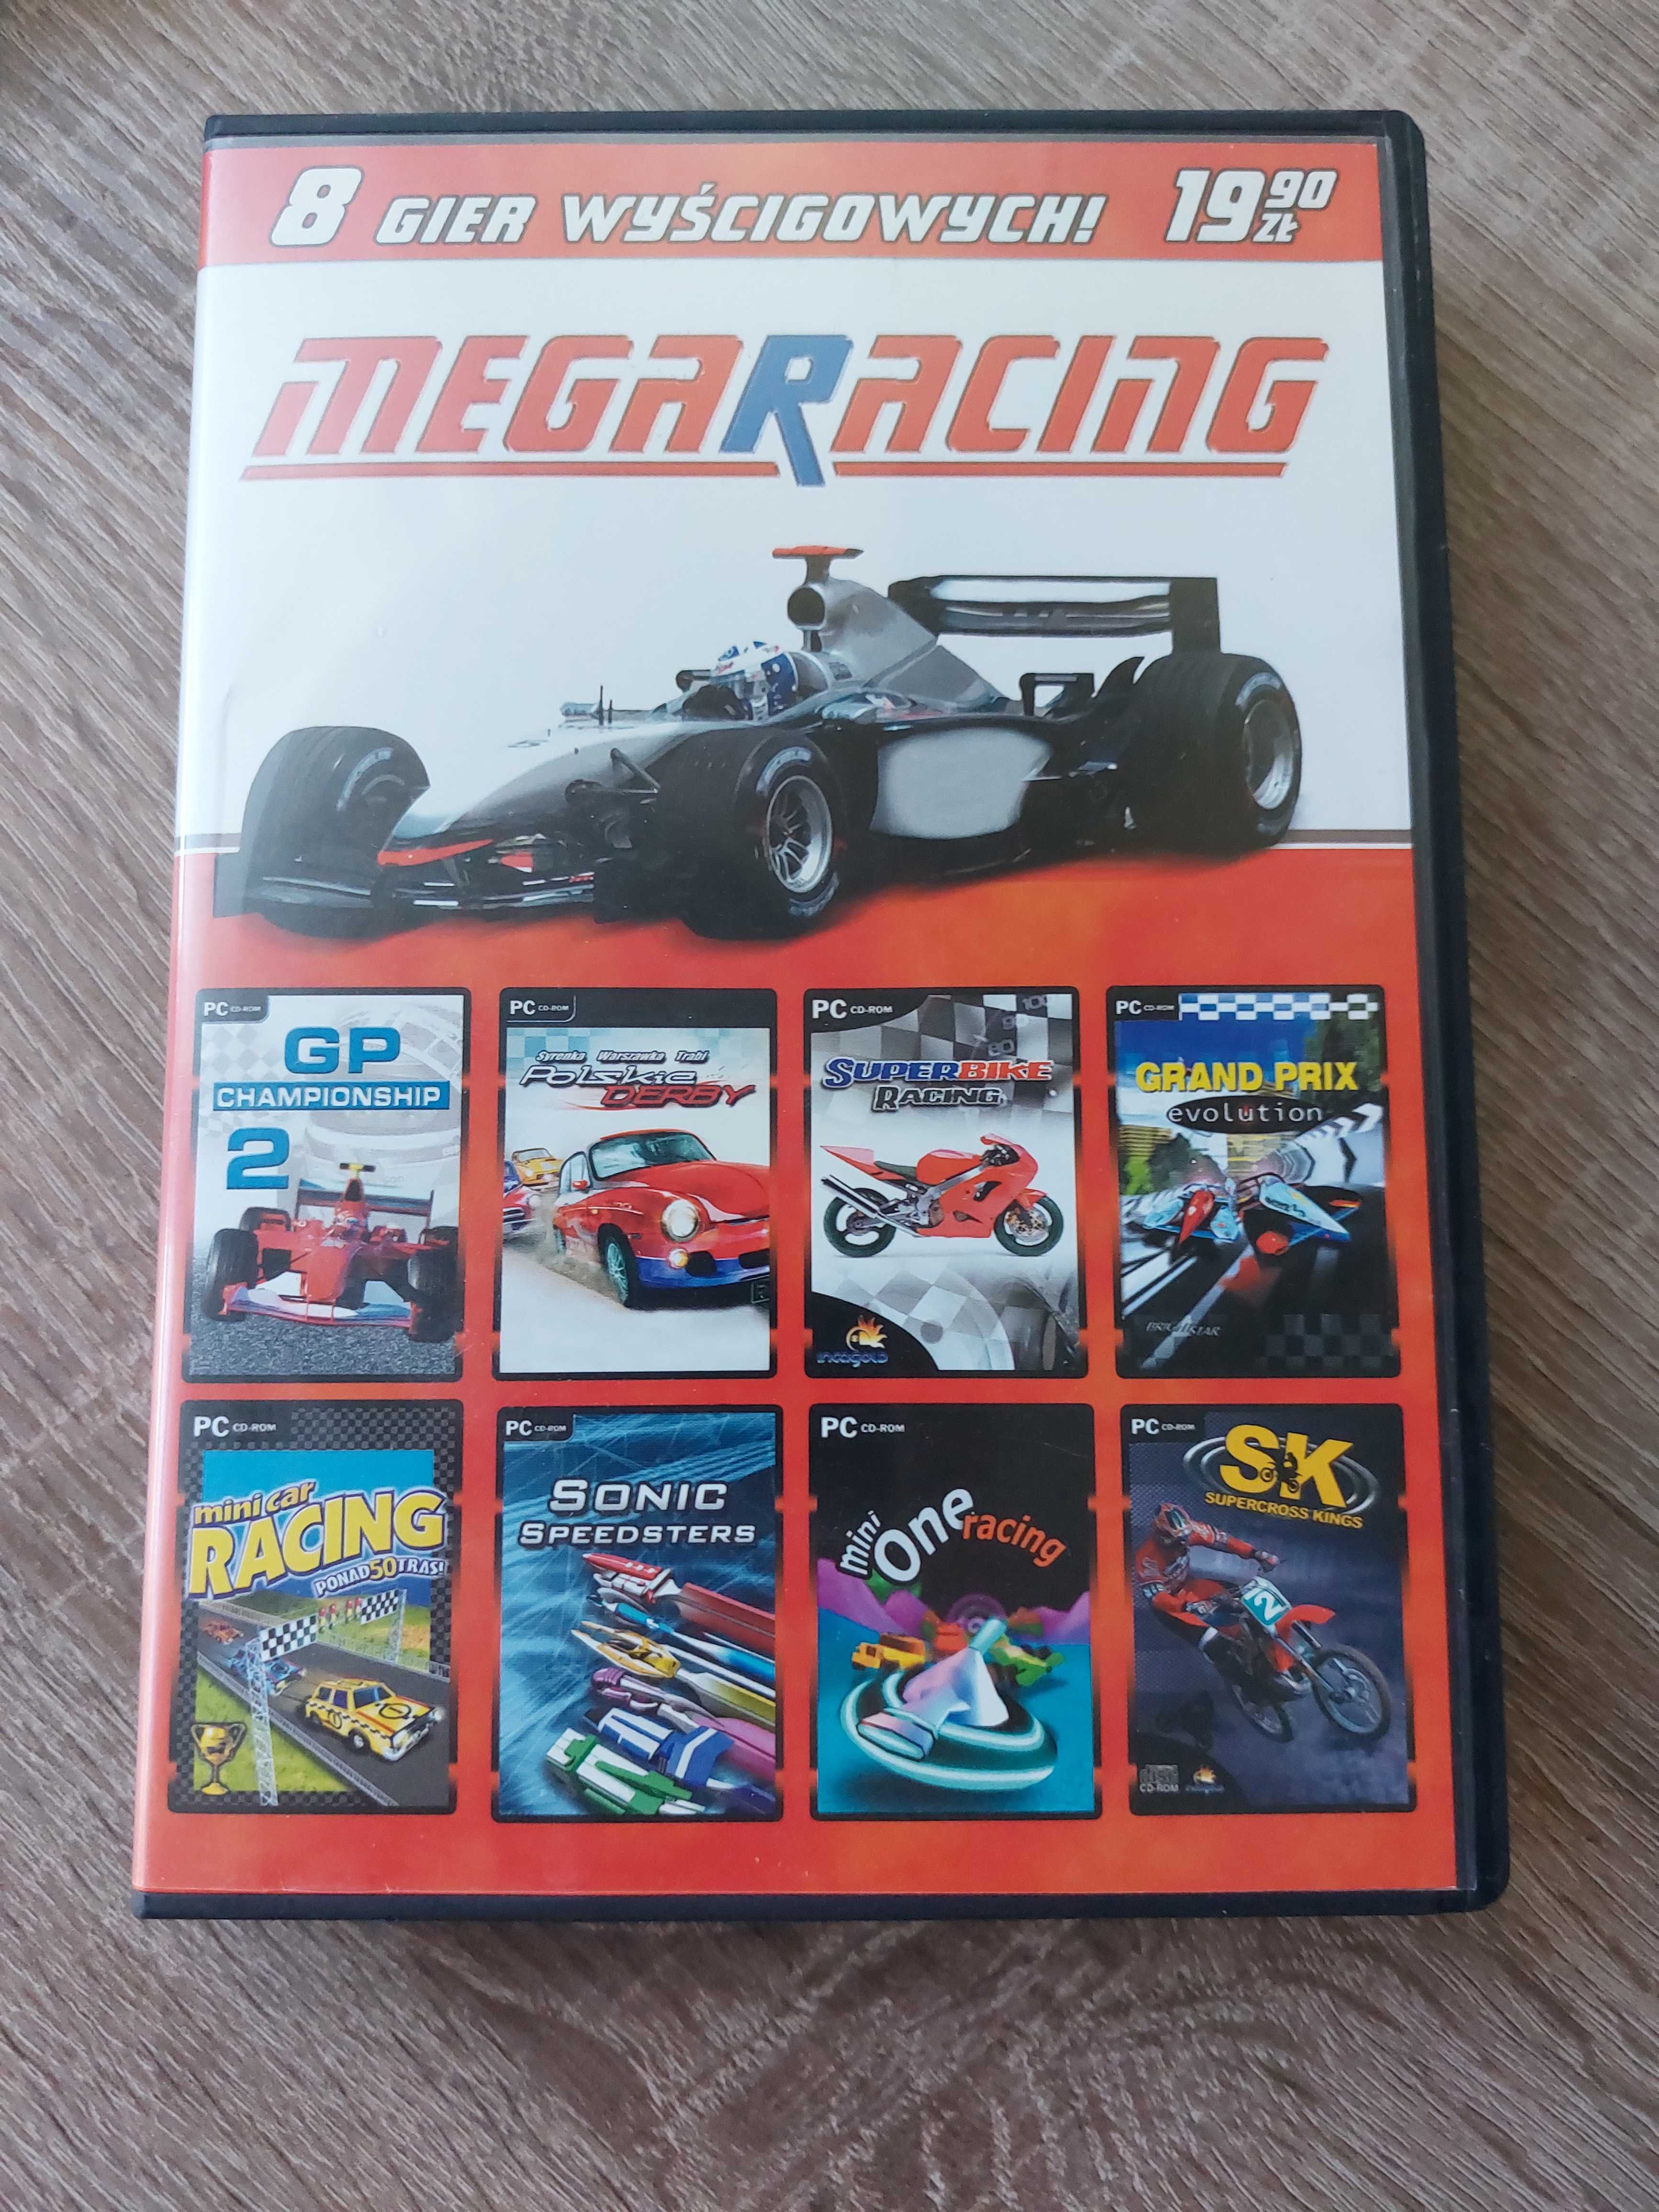 Mega Racing- 8 gier wyścigowych